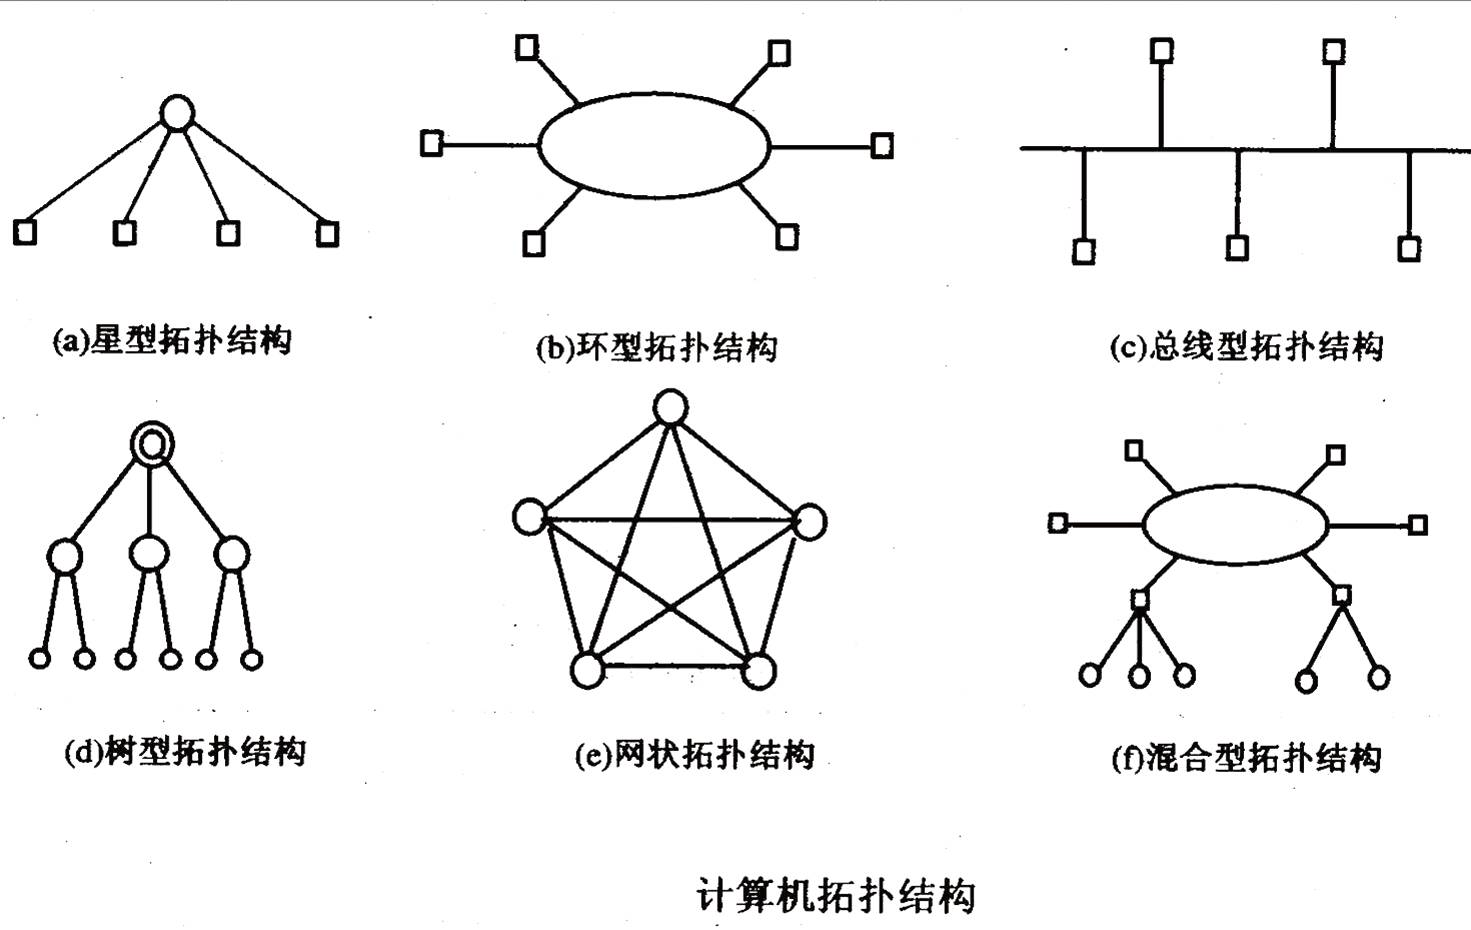 按拓扑结构分类:星型网络,总线型网络,环型网络,网状型网络,树形网络